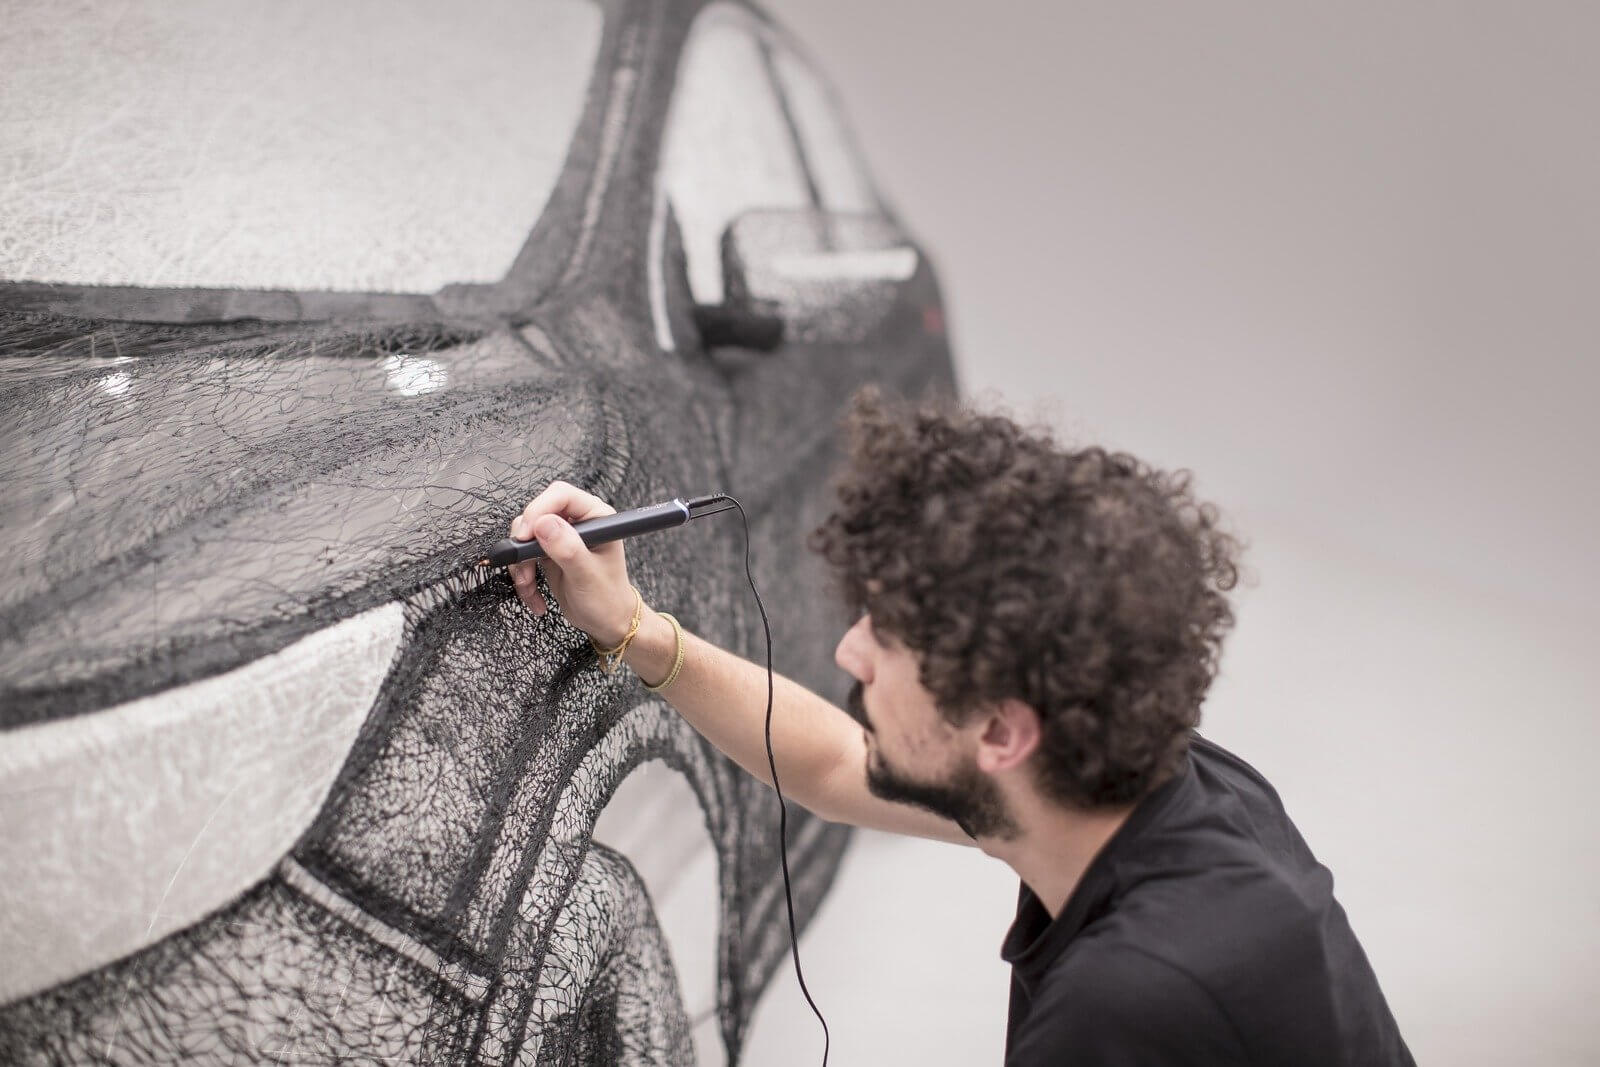 Художники «нарисовали» 3D-ручками полноразмерую скульптуру кроссовера Nissan Qashqai - 1